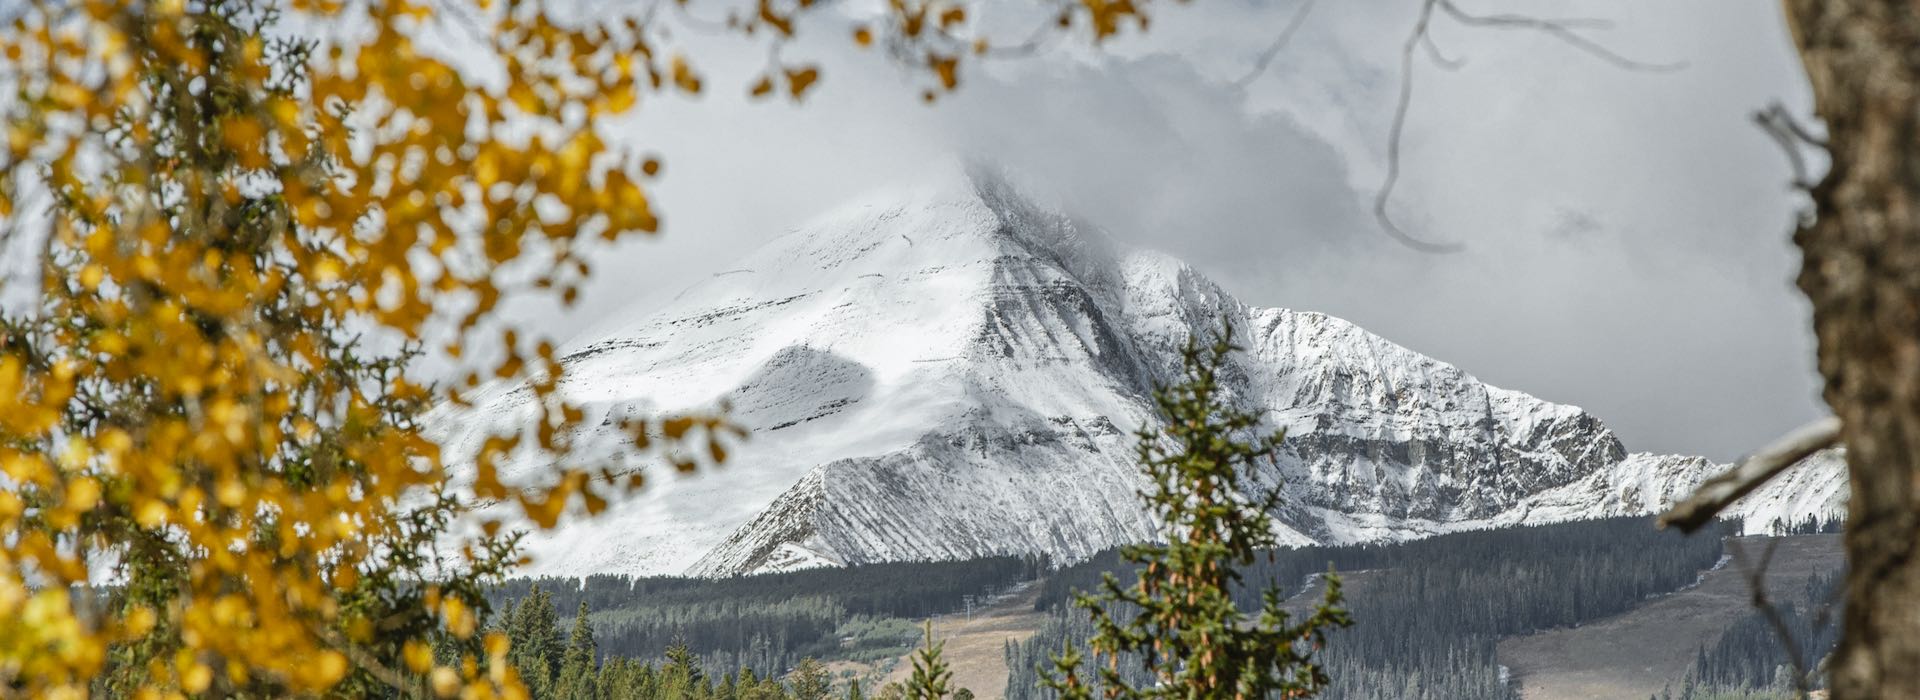 Lone Peak in the fall